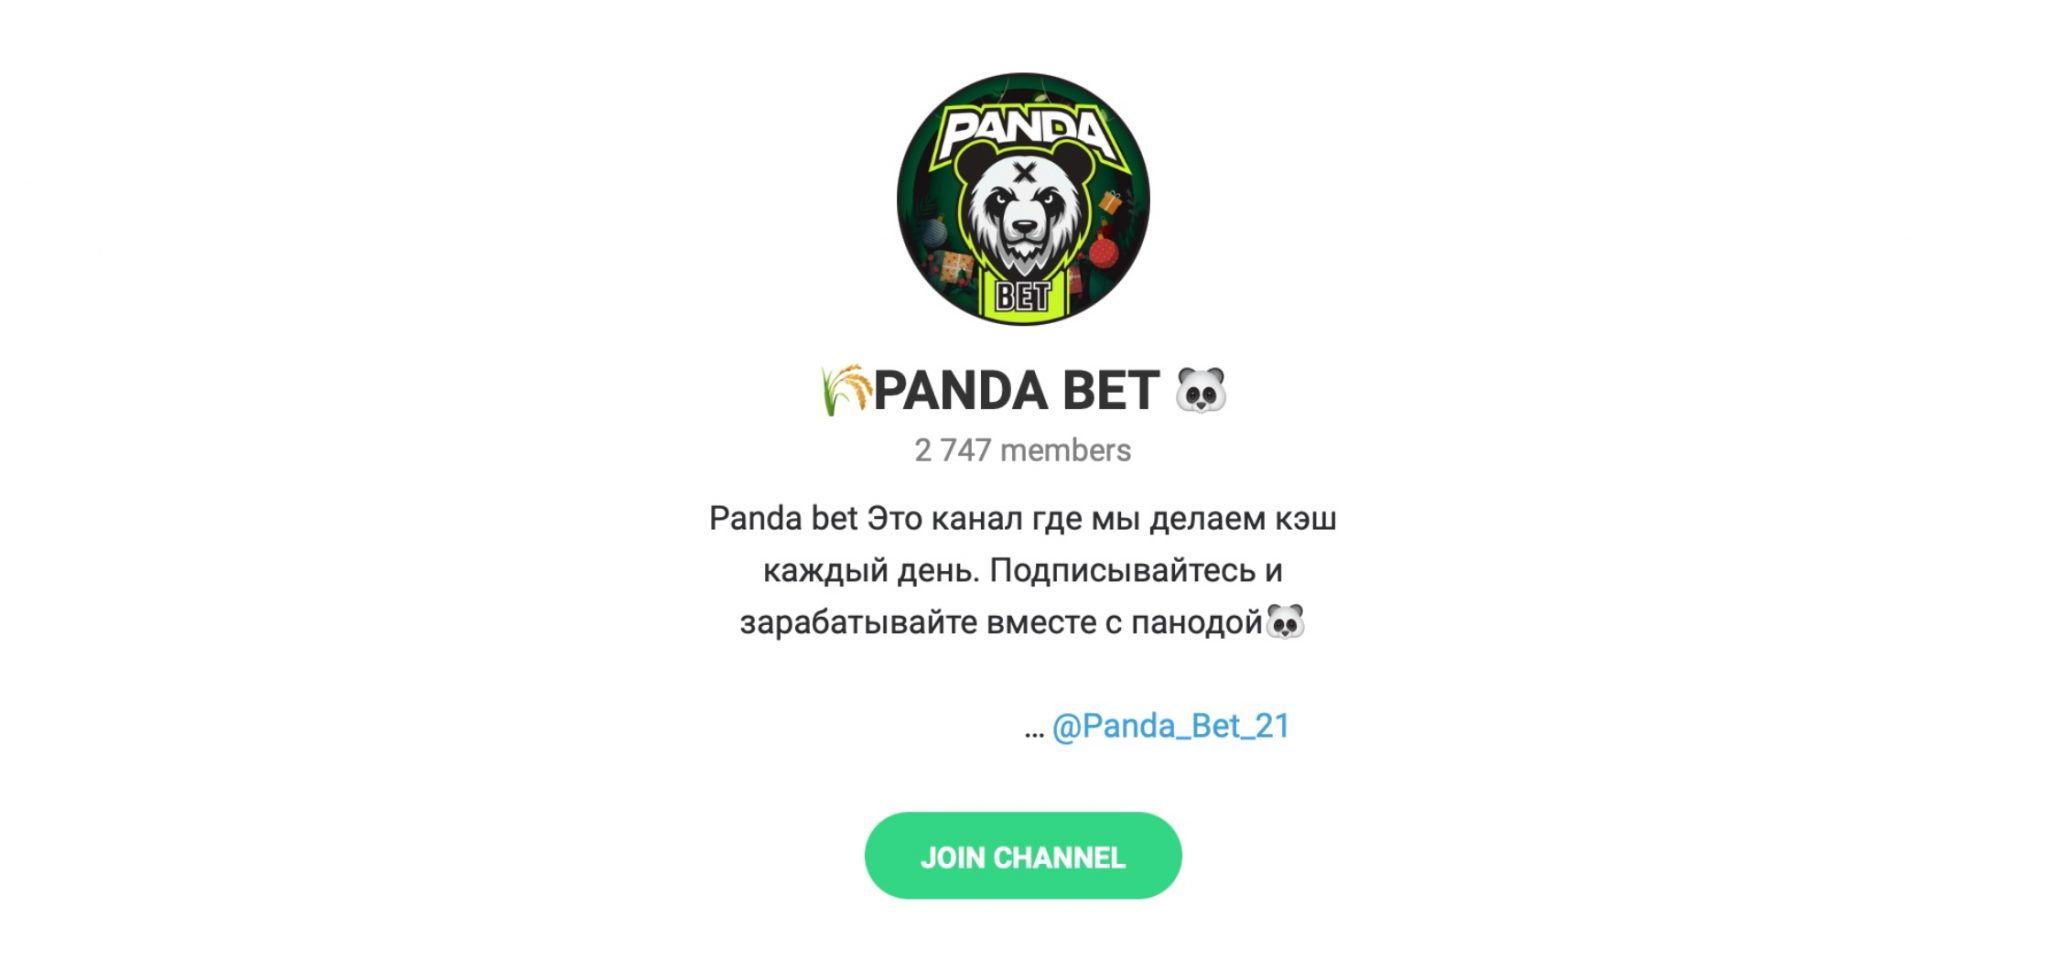 Внешний вид телеграм канала Panda Bet